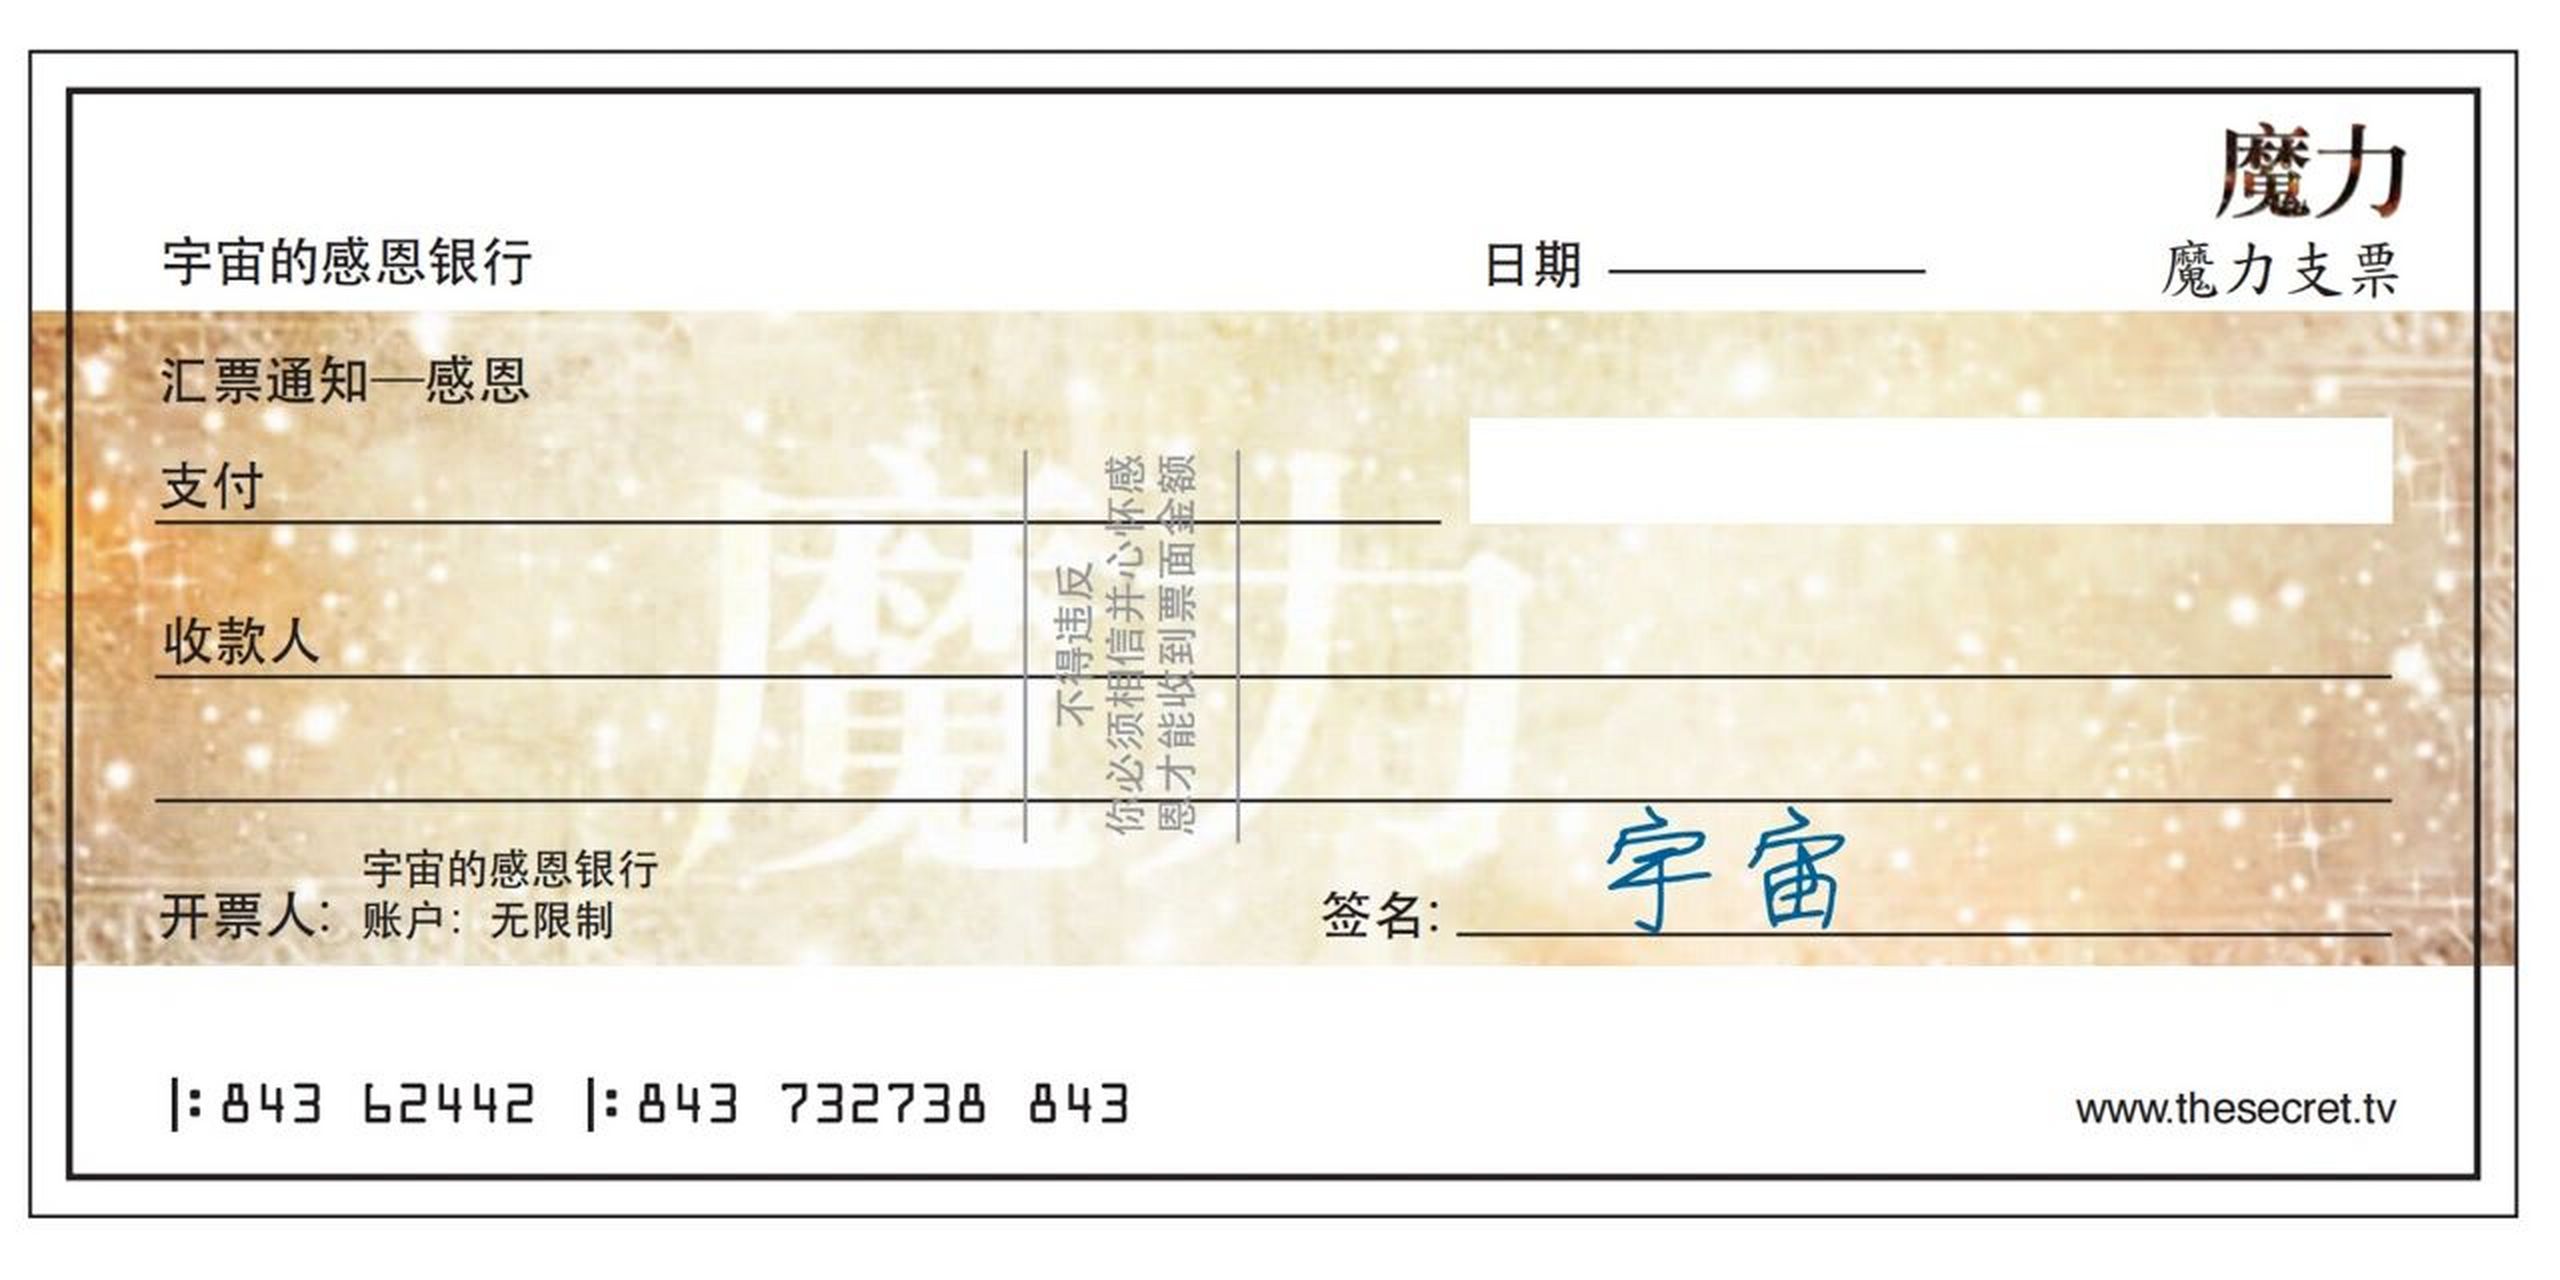 魔力支票中文填写样本图片